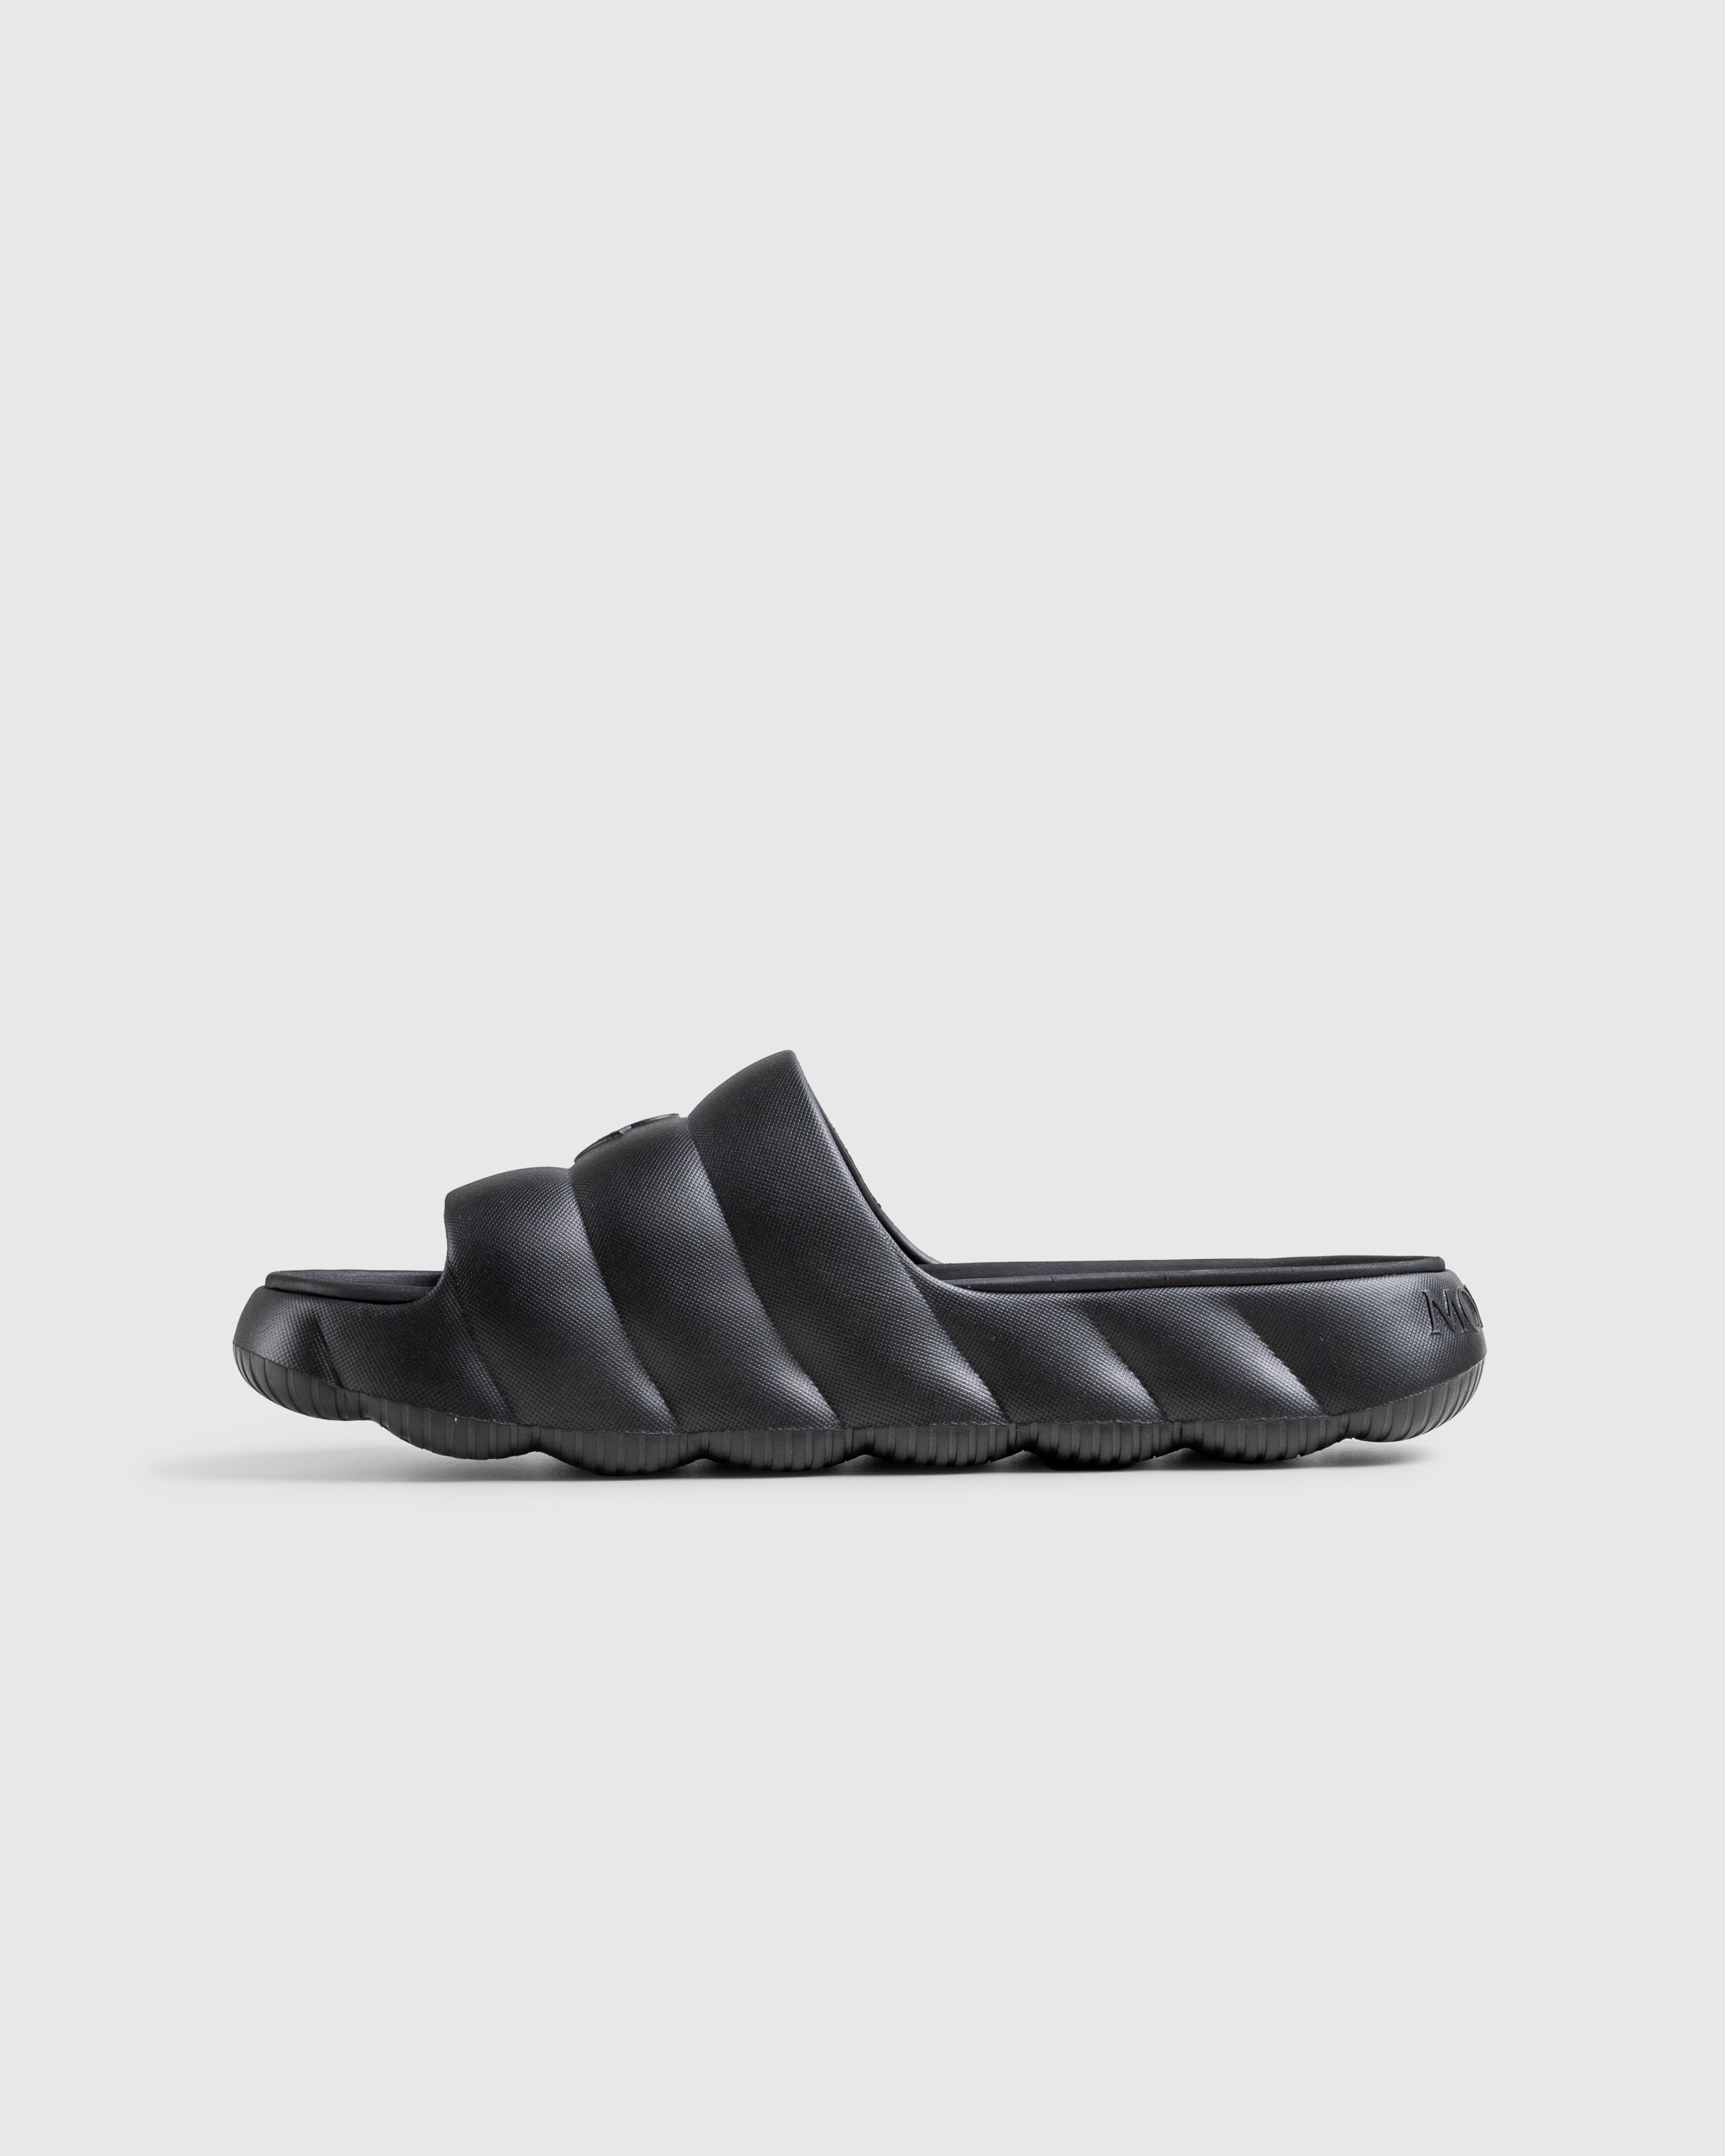 Moncler - LILO SLIDES BLACK - Footwear - Black - Image 2